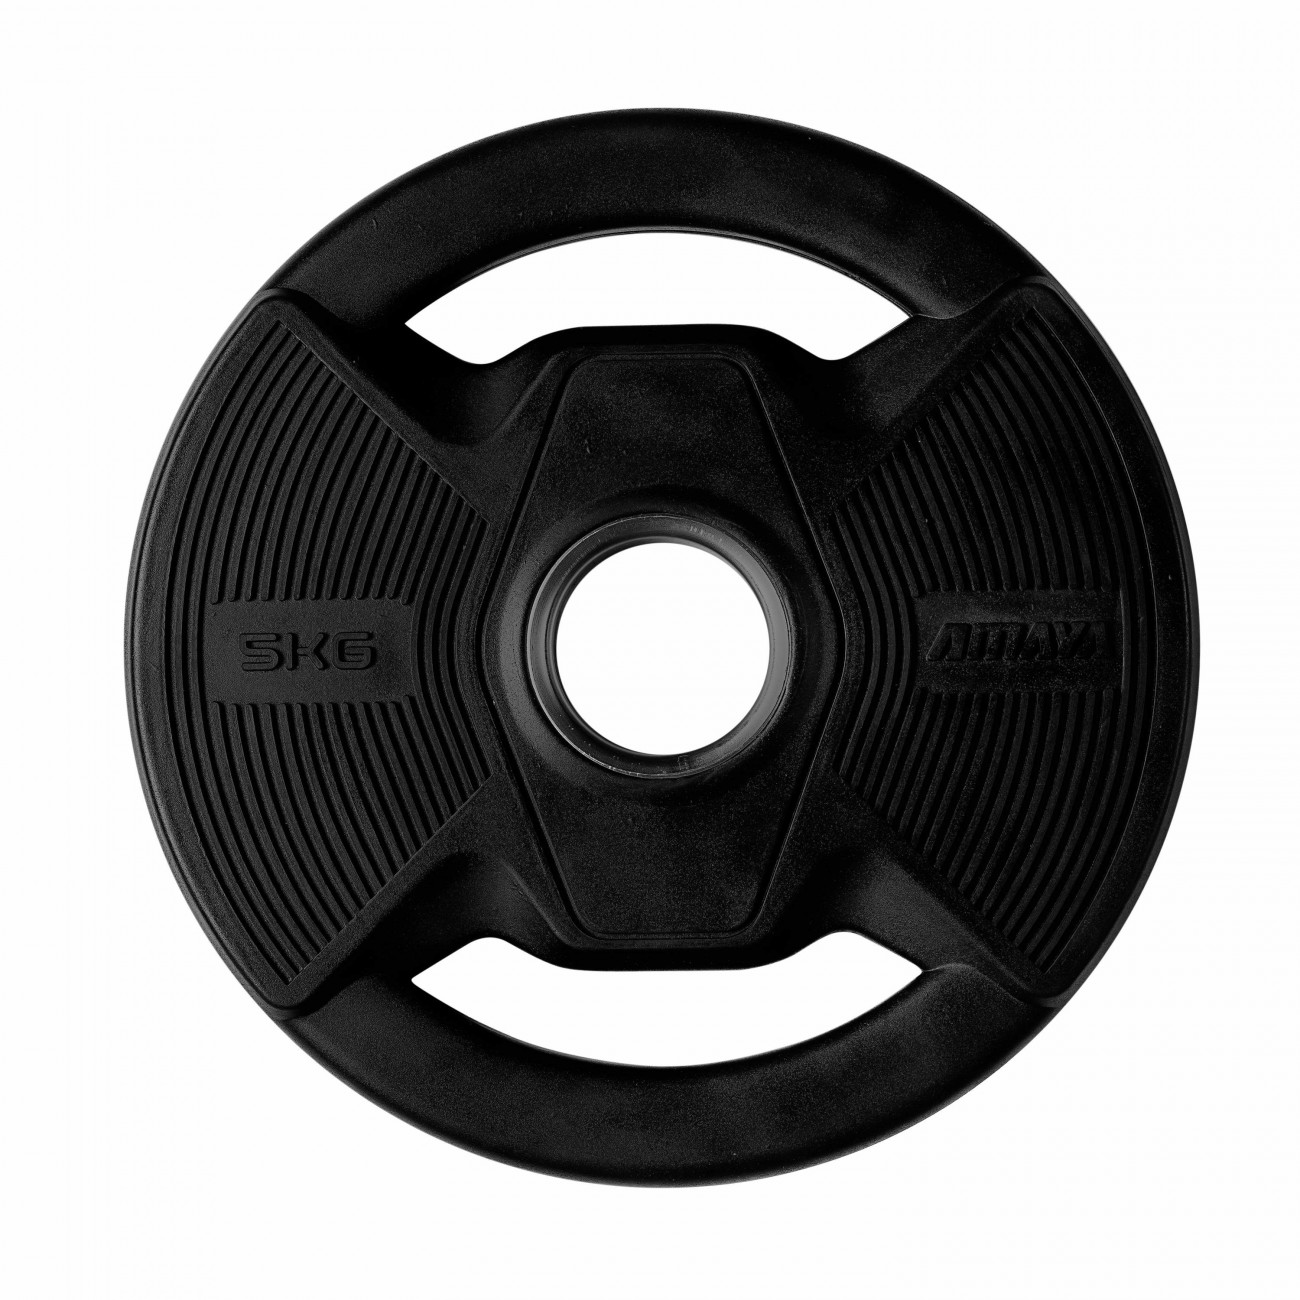 plato-olimpico-pro-con-agarres-black-rubber-negro (1)